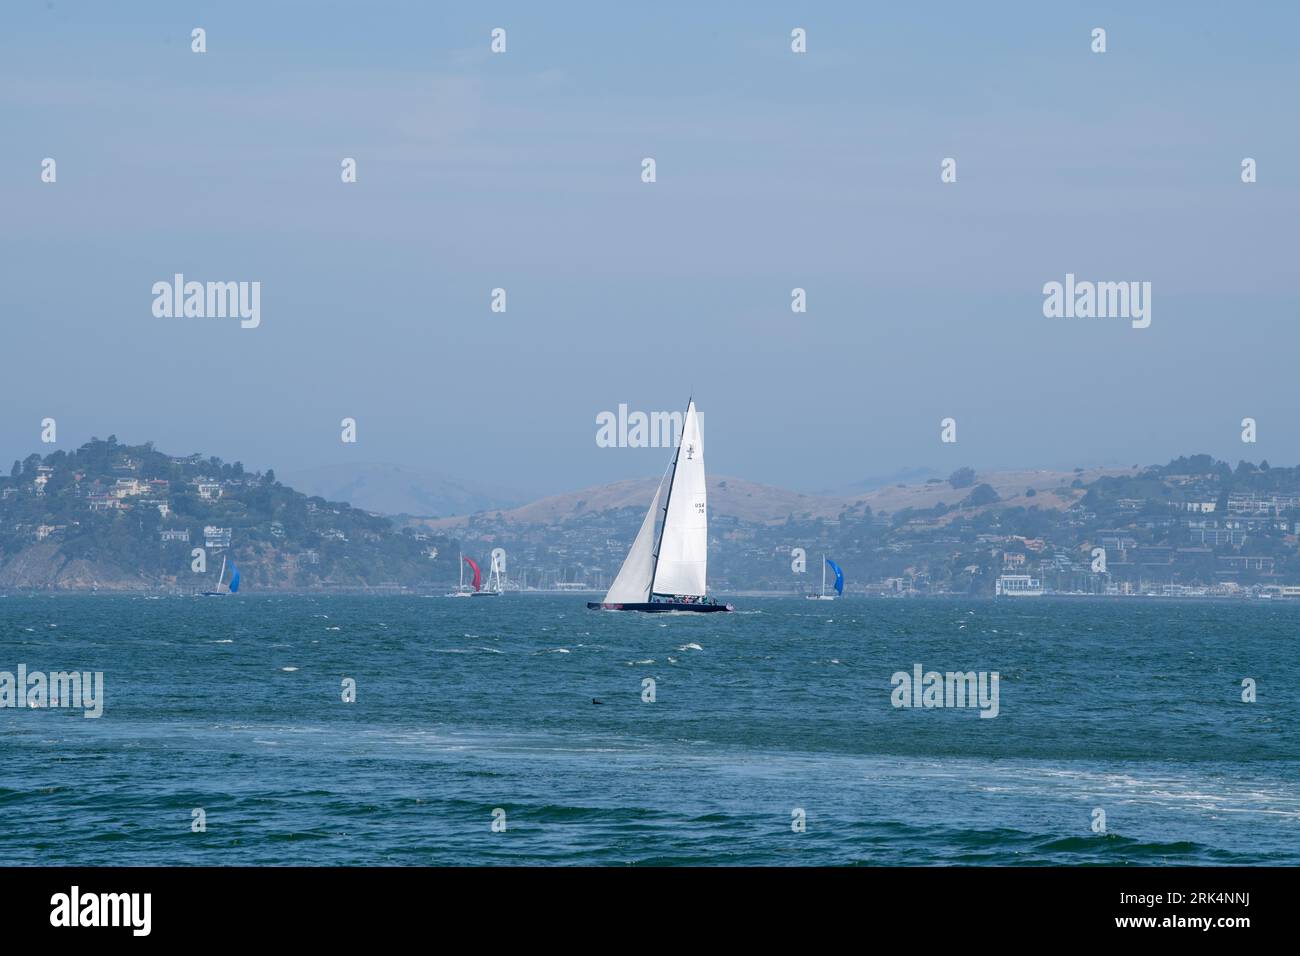 USA 76 sailing in San Francisco Bay Stock Photo